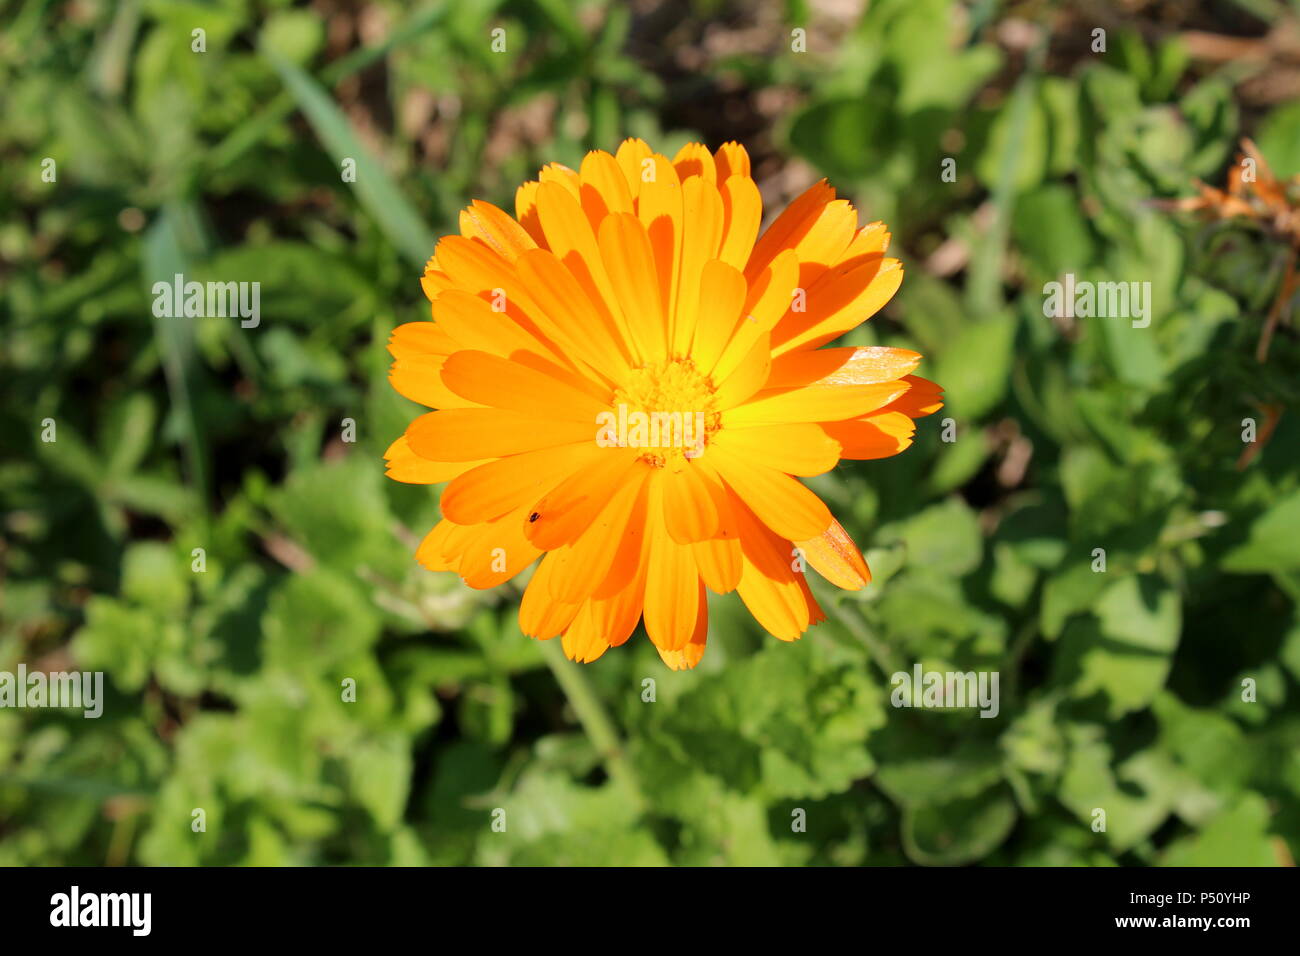 Englisch Ringelblume oder Pot marigold oder Calendula officinalis oder  Scotch Ringelblume blühen Orange Blume mit kleinen Fliegen auf die  Blütenblätter auf dunkelgrünen Blätter Stockfotografie - Alamy